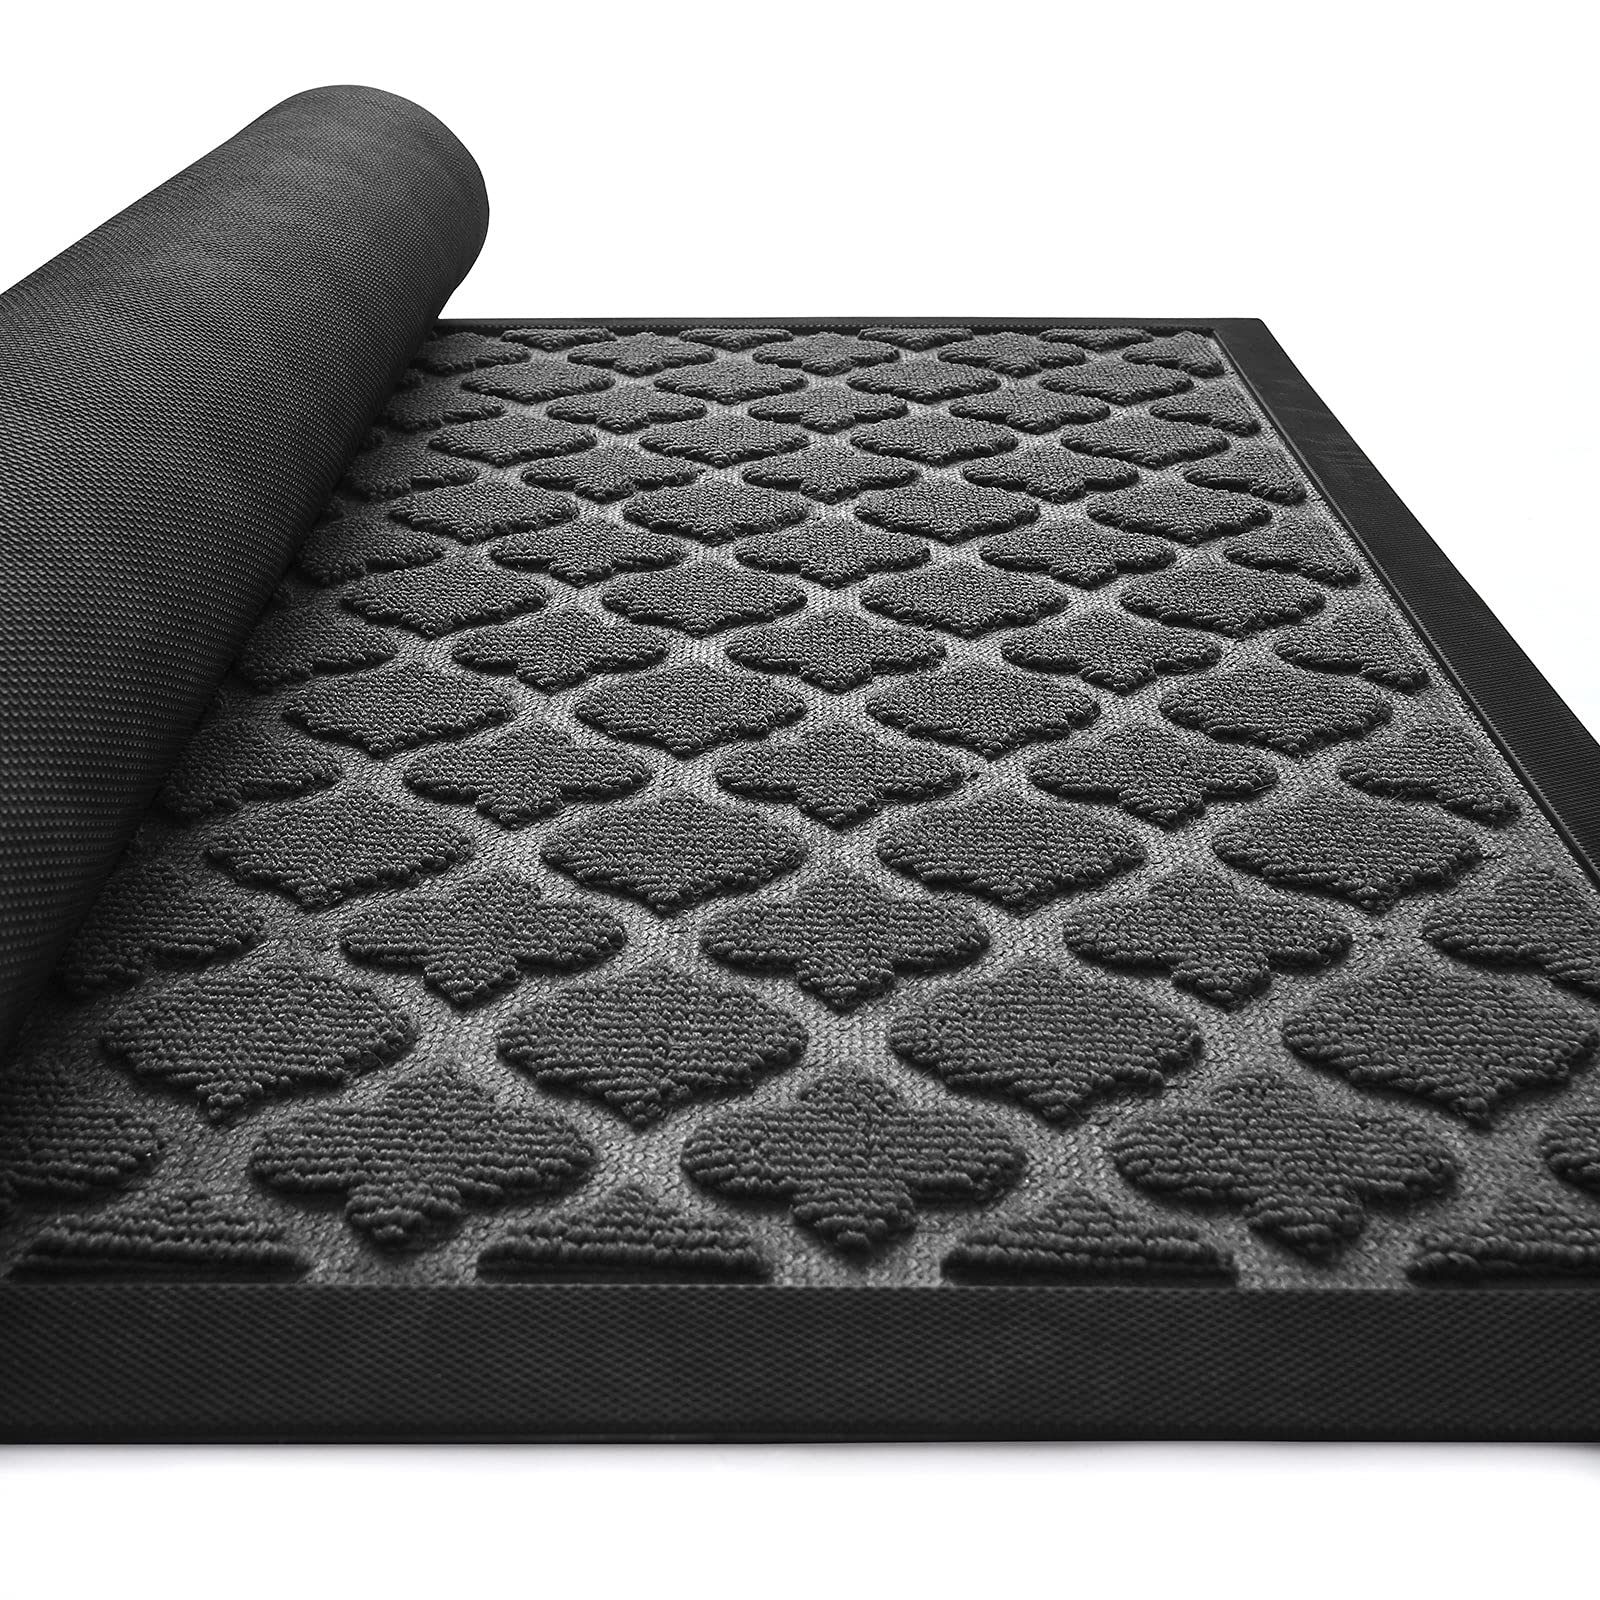 DEXI Door Mat Front Indoor Outdoor Doormat,Small Heavy Duty Rubber Outside  Floor Rug for Entryway Patio Waterproof Low-Profile,17x29,Black